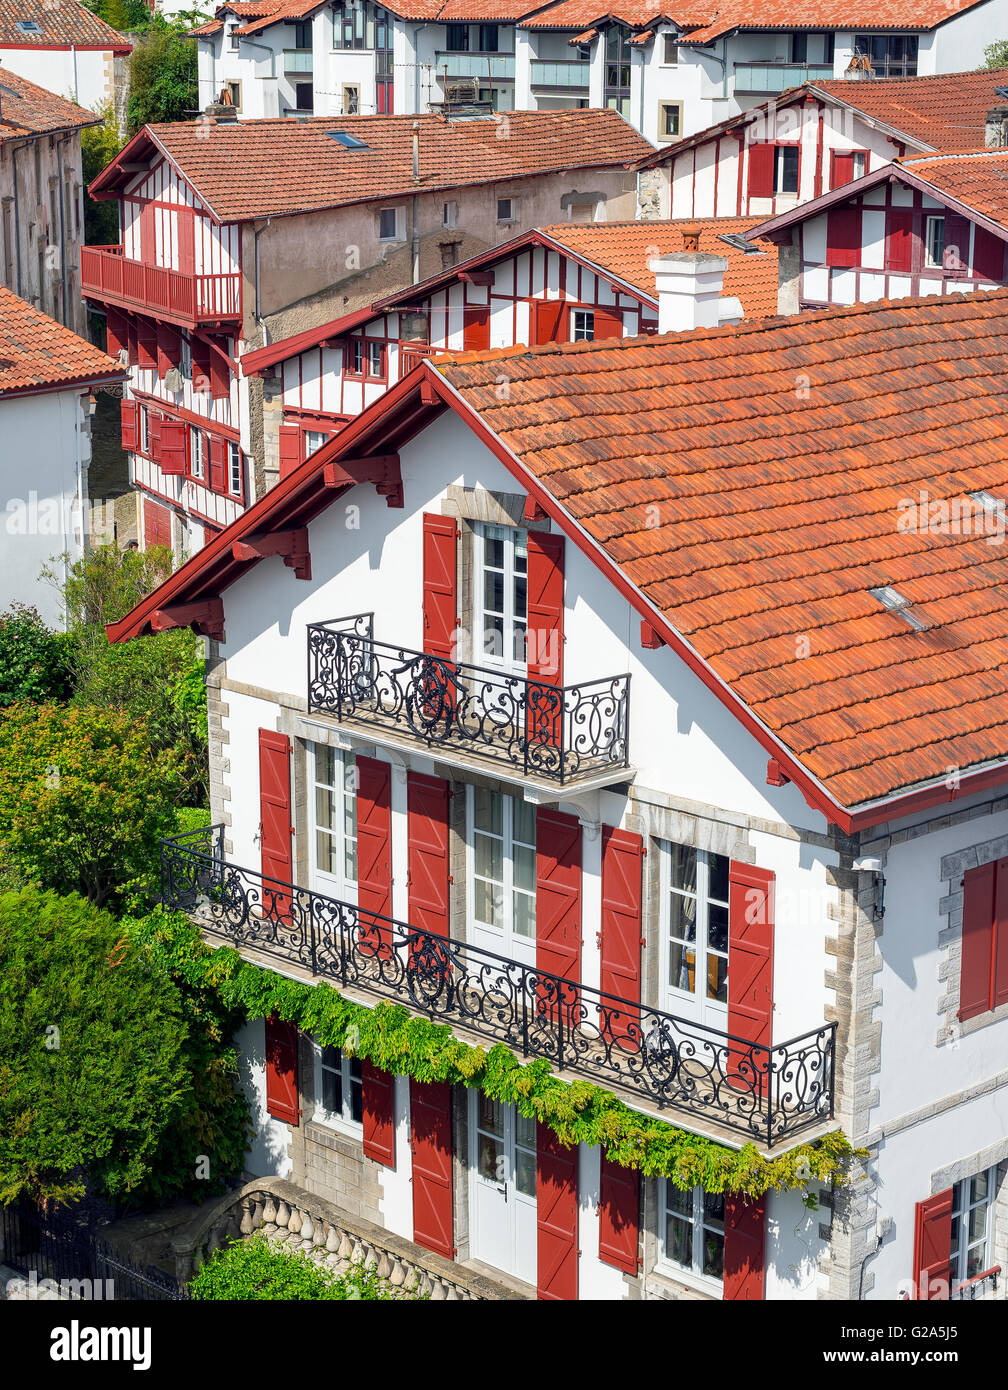 Bâtiments typiques du Pays Basque dans une rue de Ciboure. Aquitaine, France. Banque D'Images